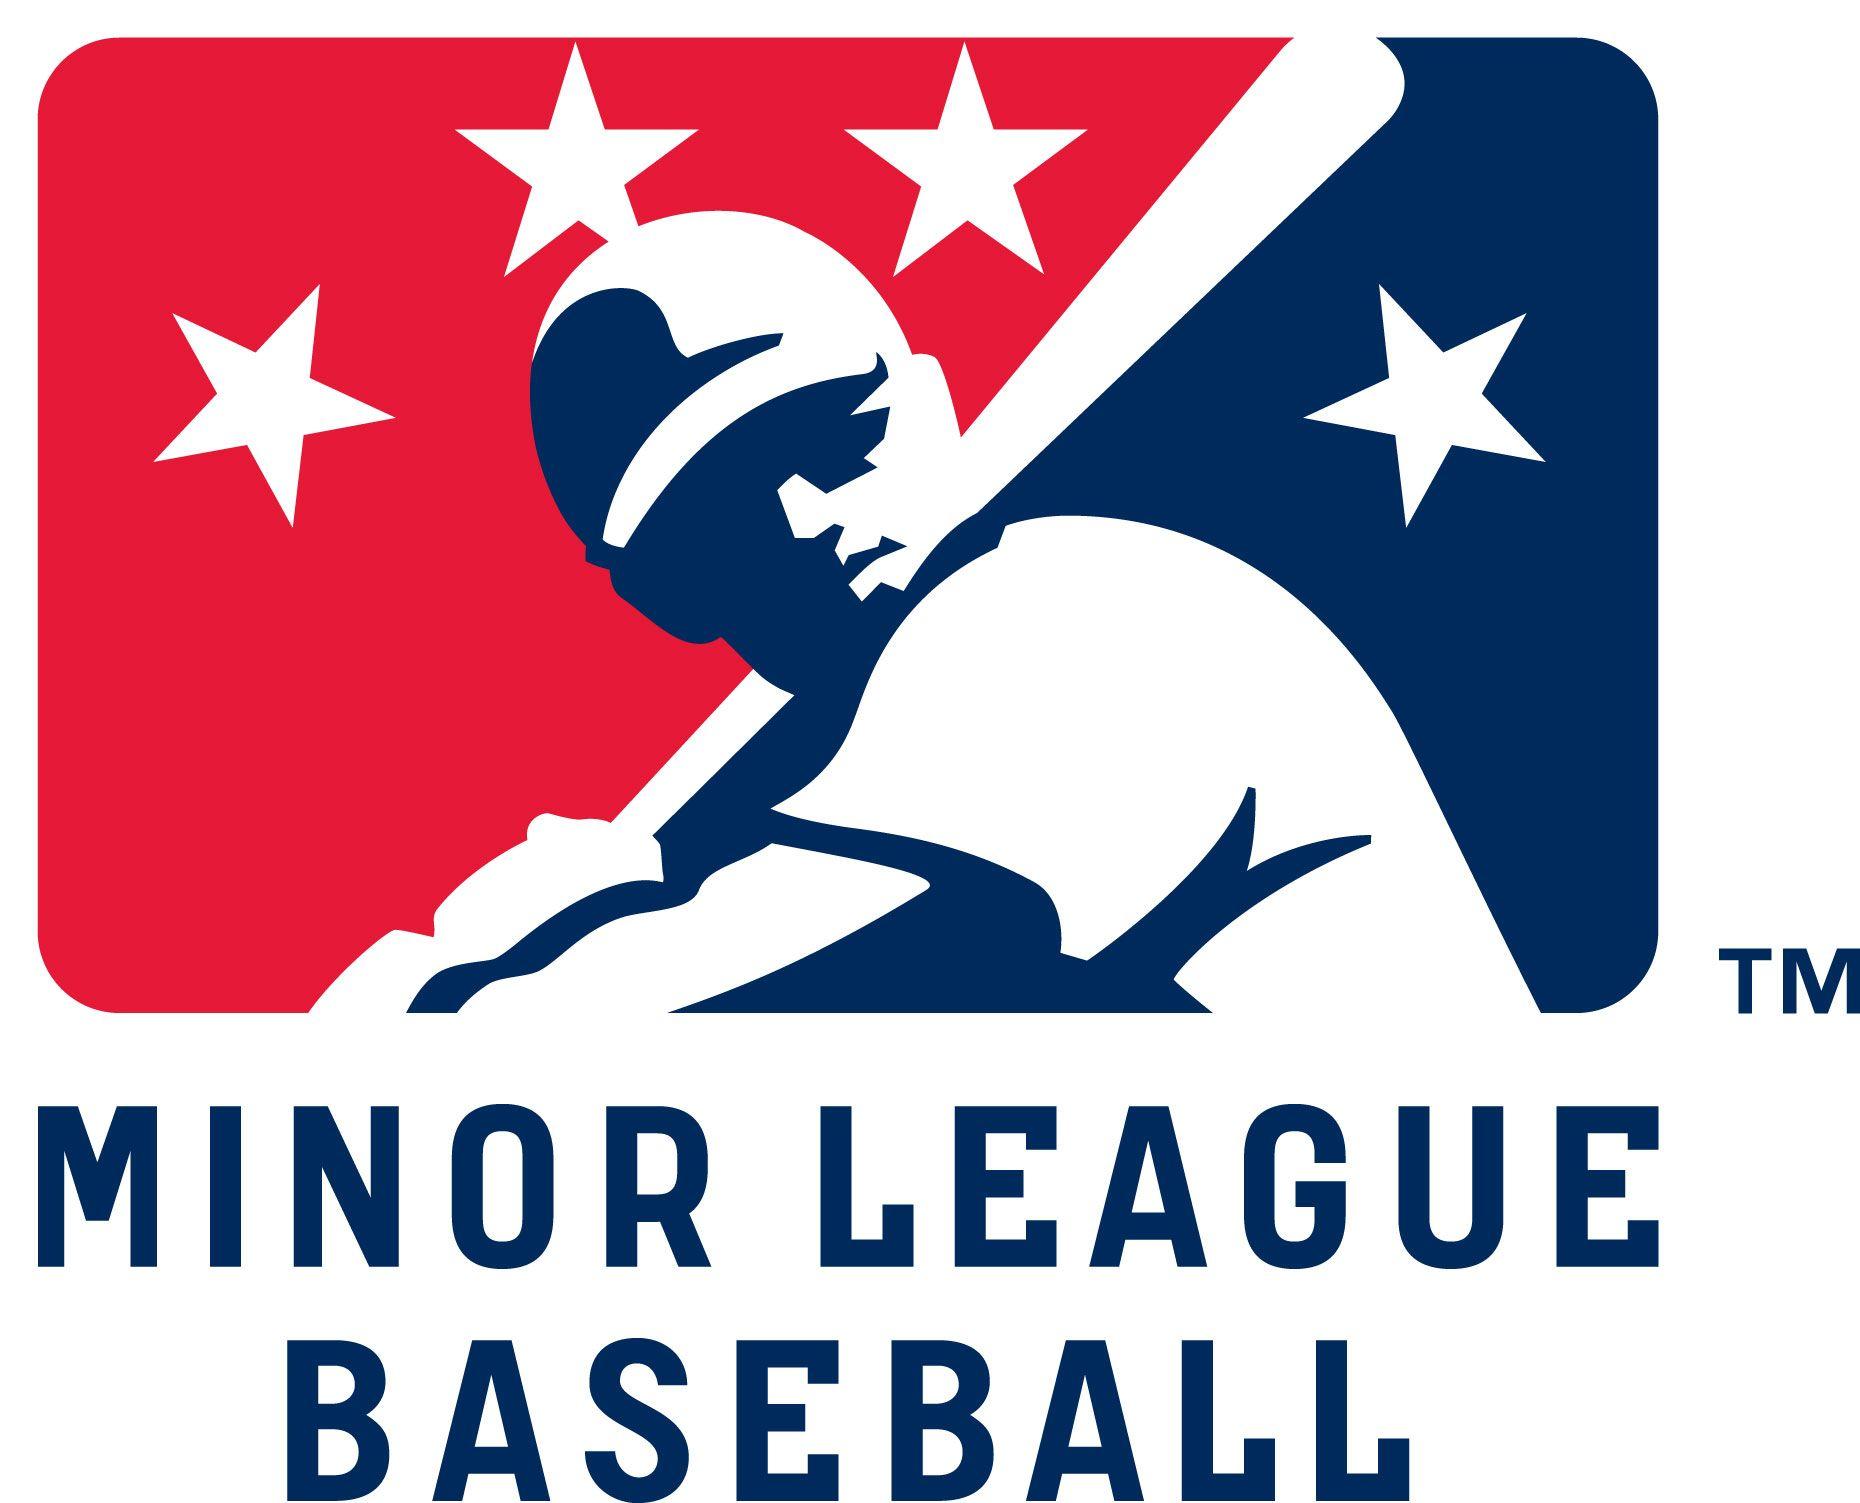 Major League Baseball Logo - Minor League Baseball Logo.jpg | Logos | Pinterest | Minor league ...